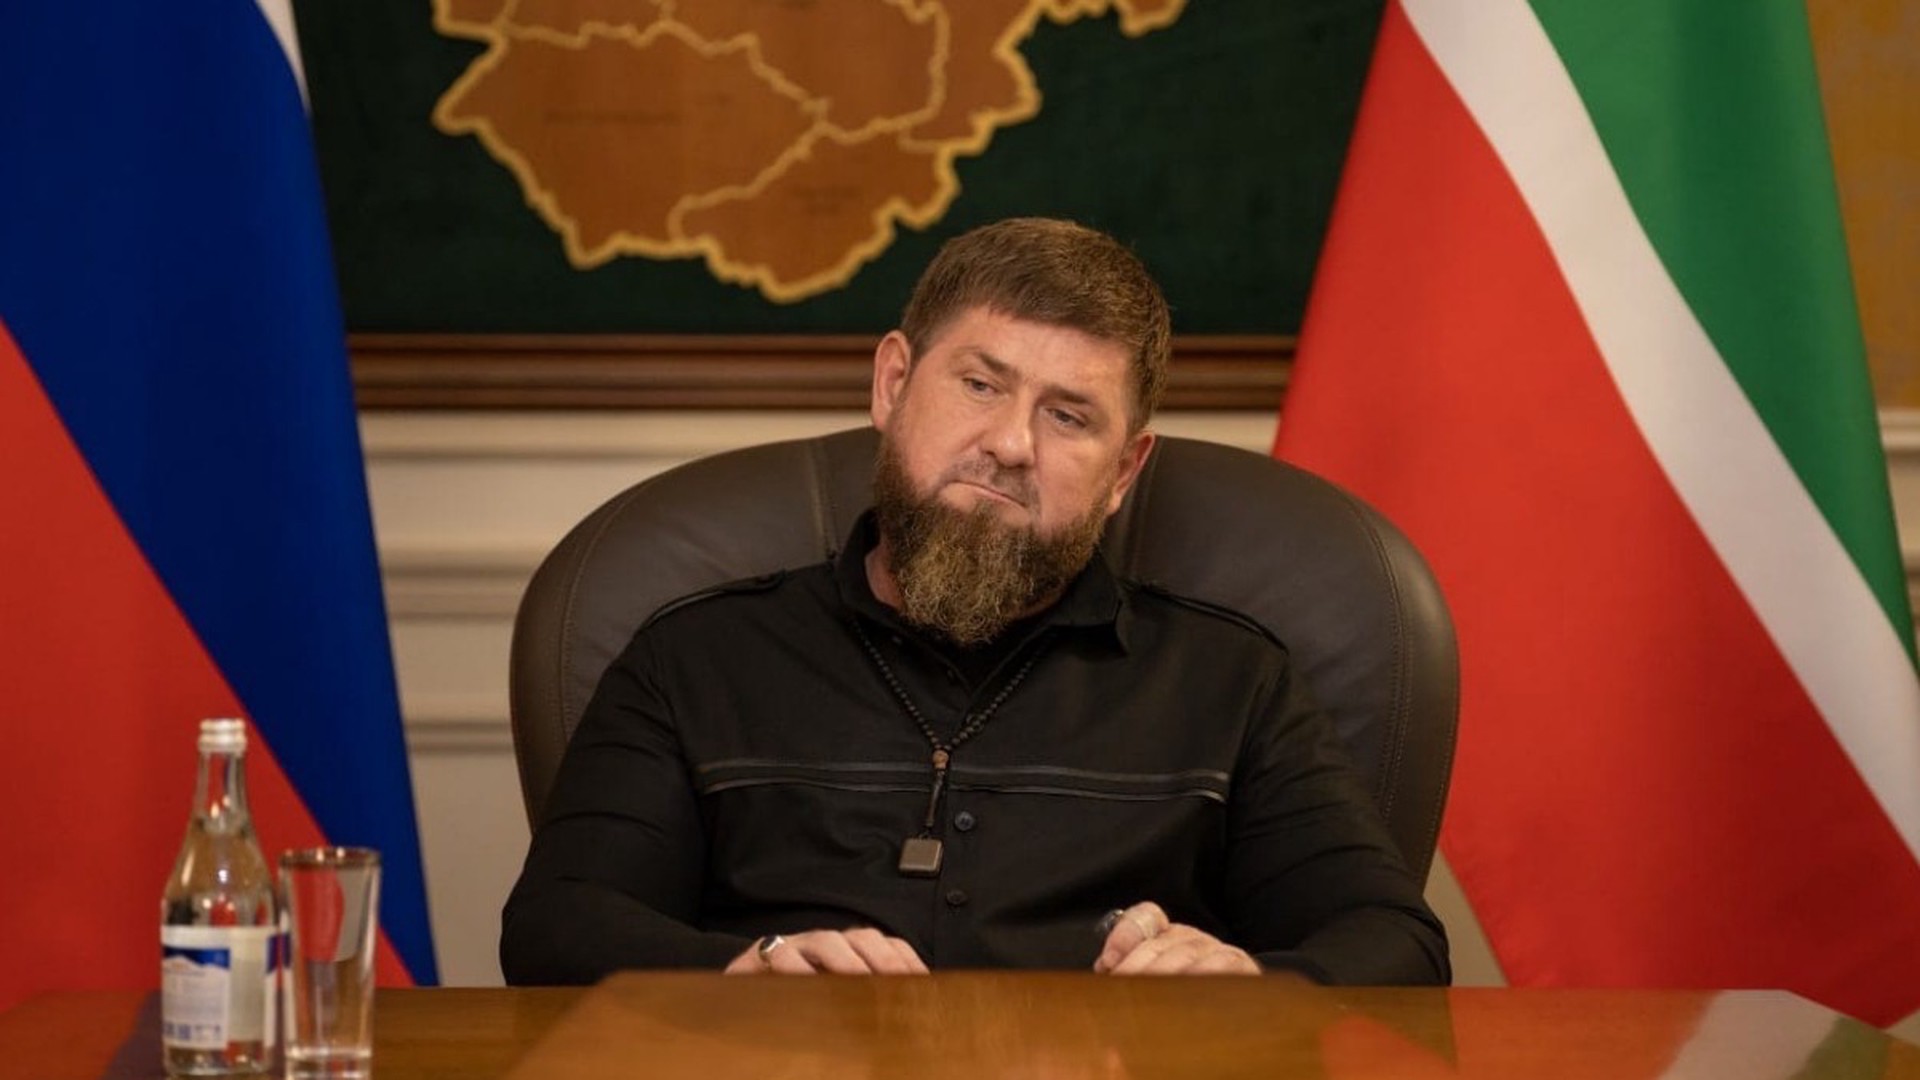 Кадыров заявил, что остался недоволен обменом пленными между РФ и Украиной